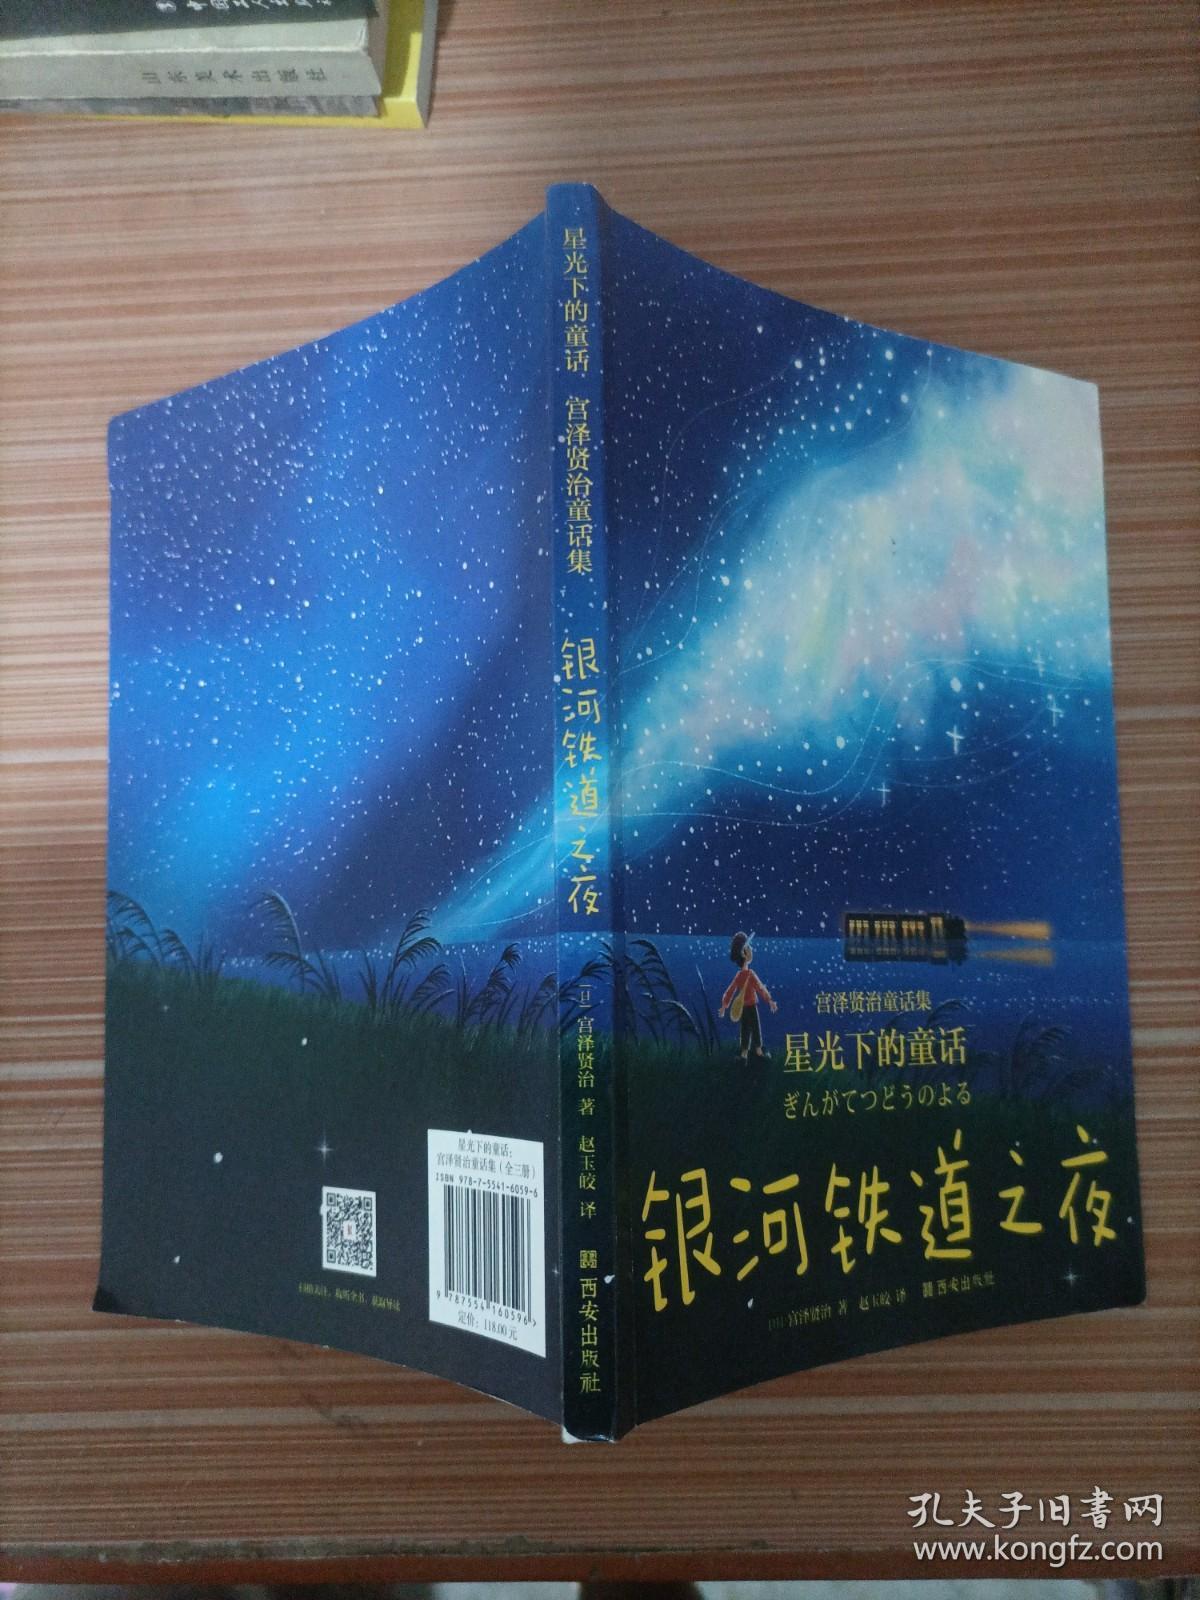 星光下的童话：宫泽贤治童话集   银河铁道之夜